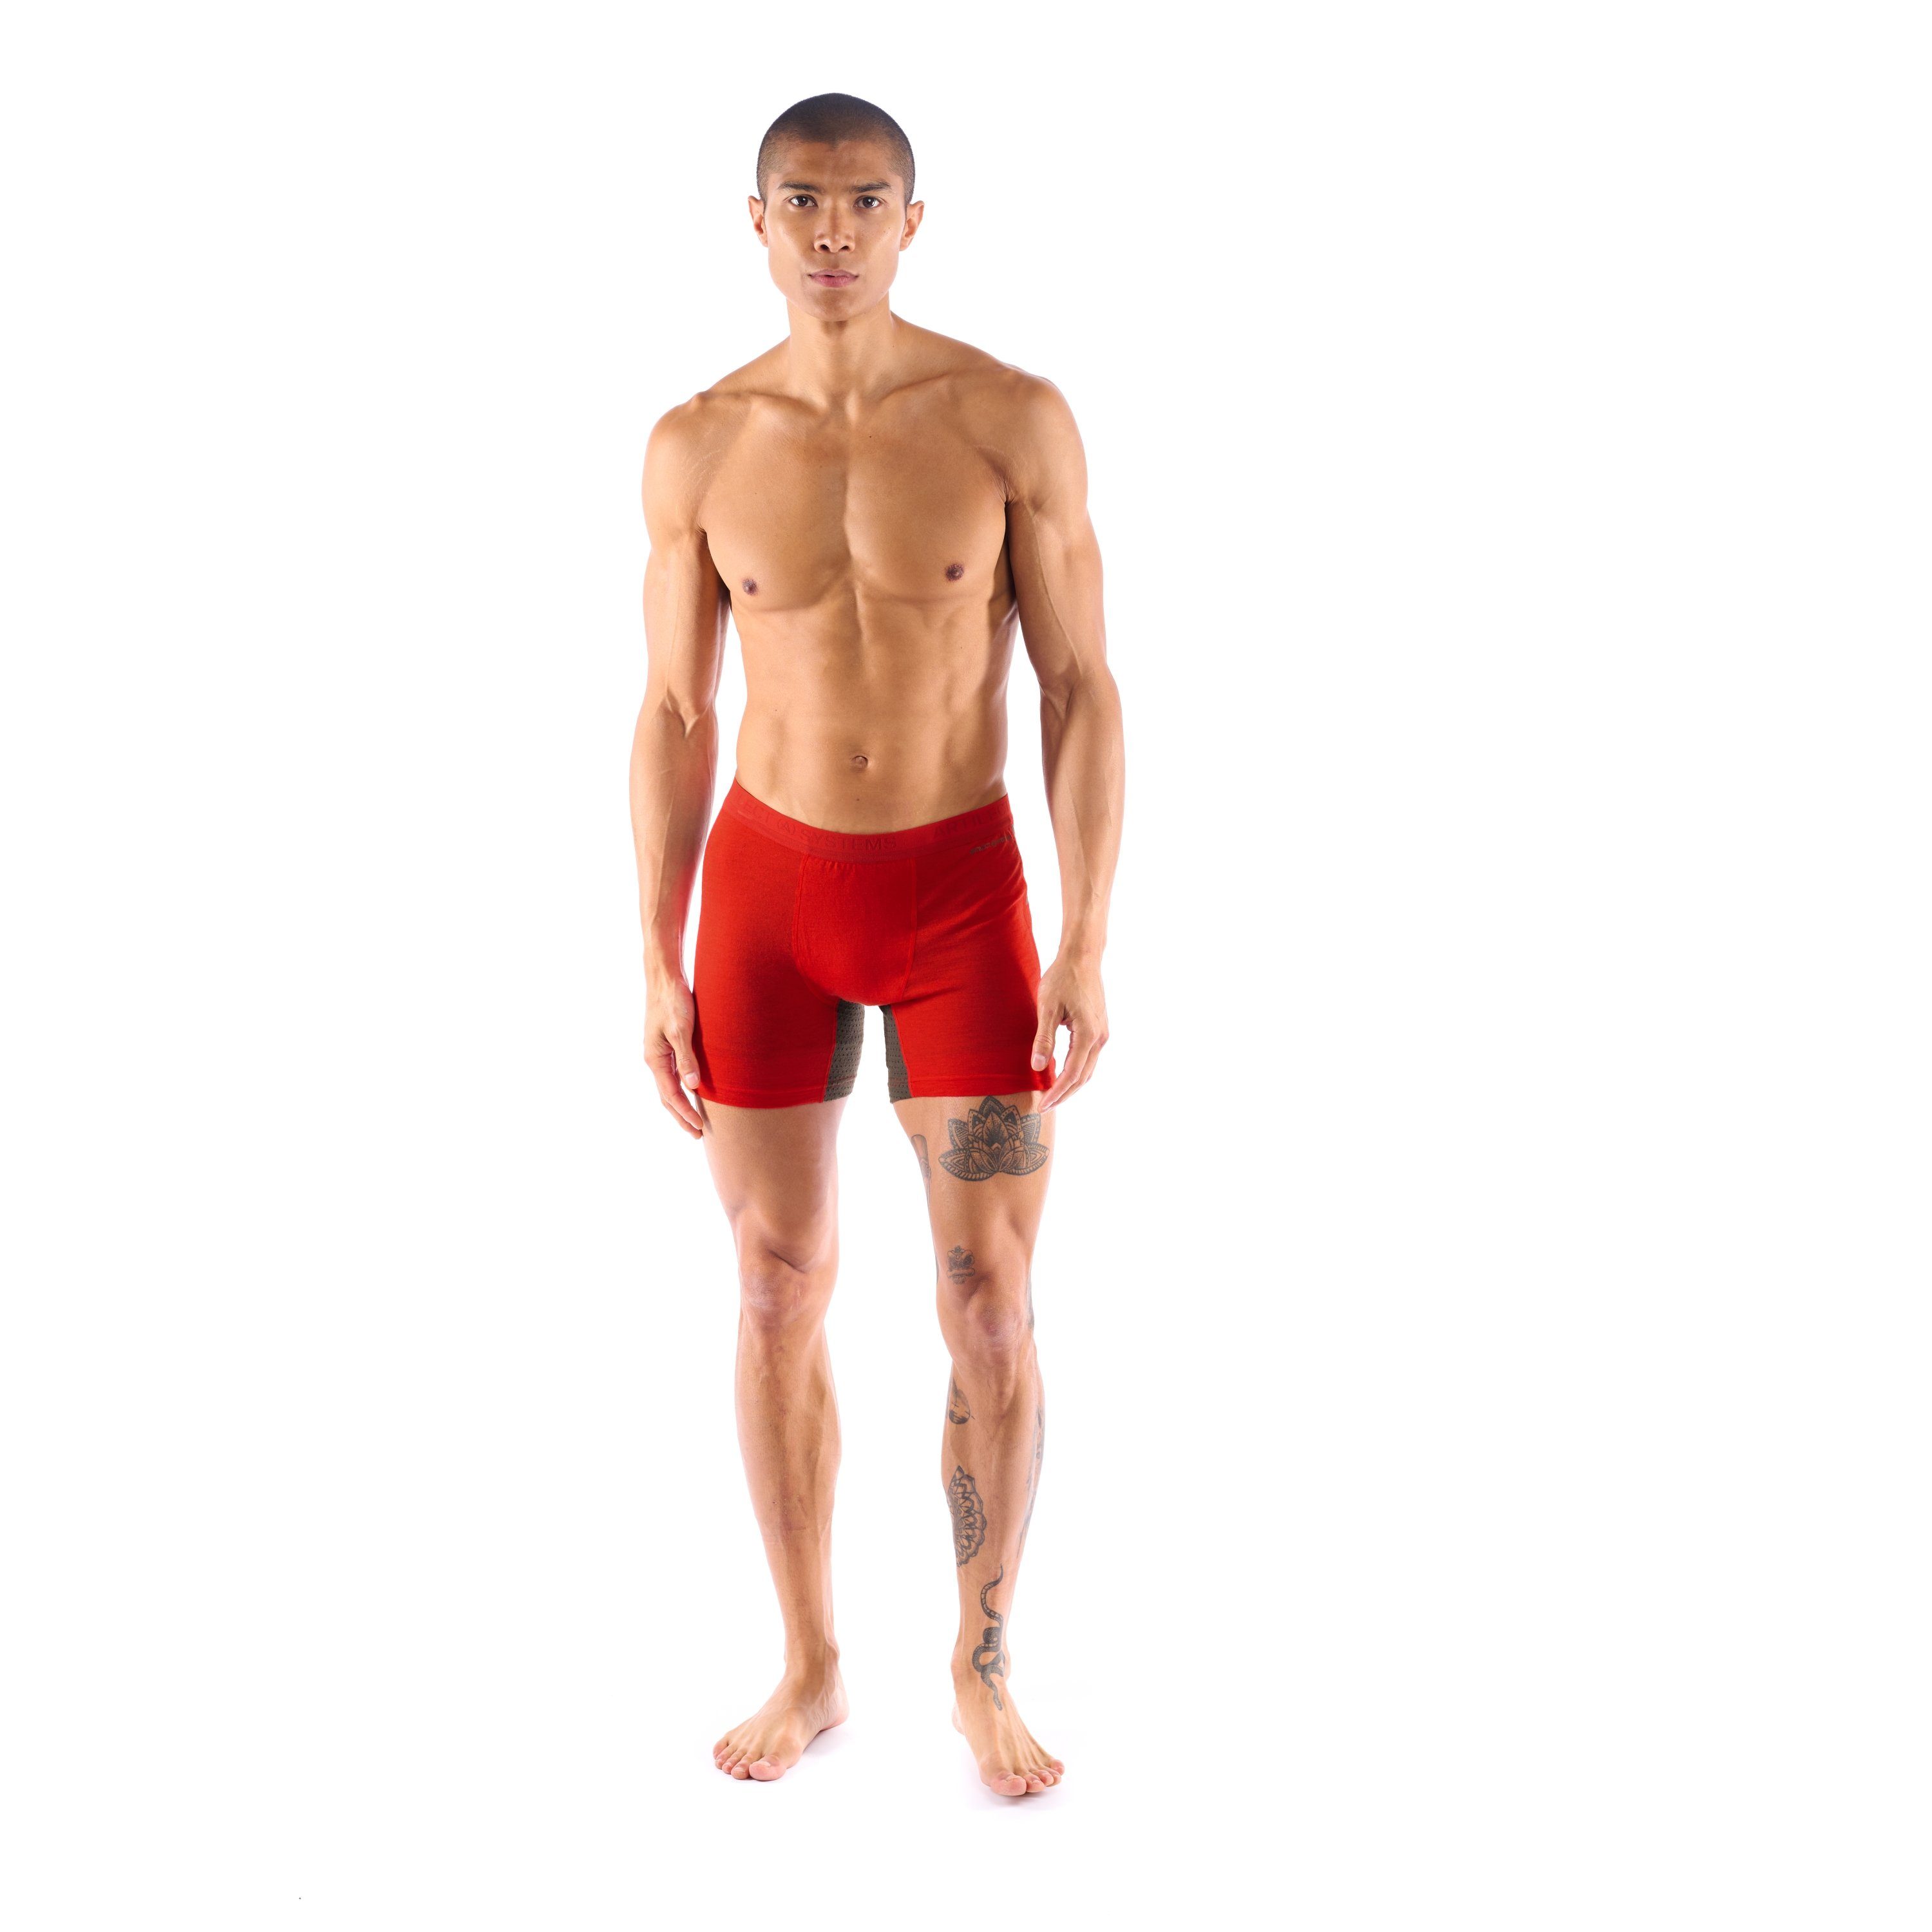 Artilect Boxer Artilect Herren Brief 125 Red/Ash Boulder Boxer Unterhose Super